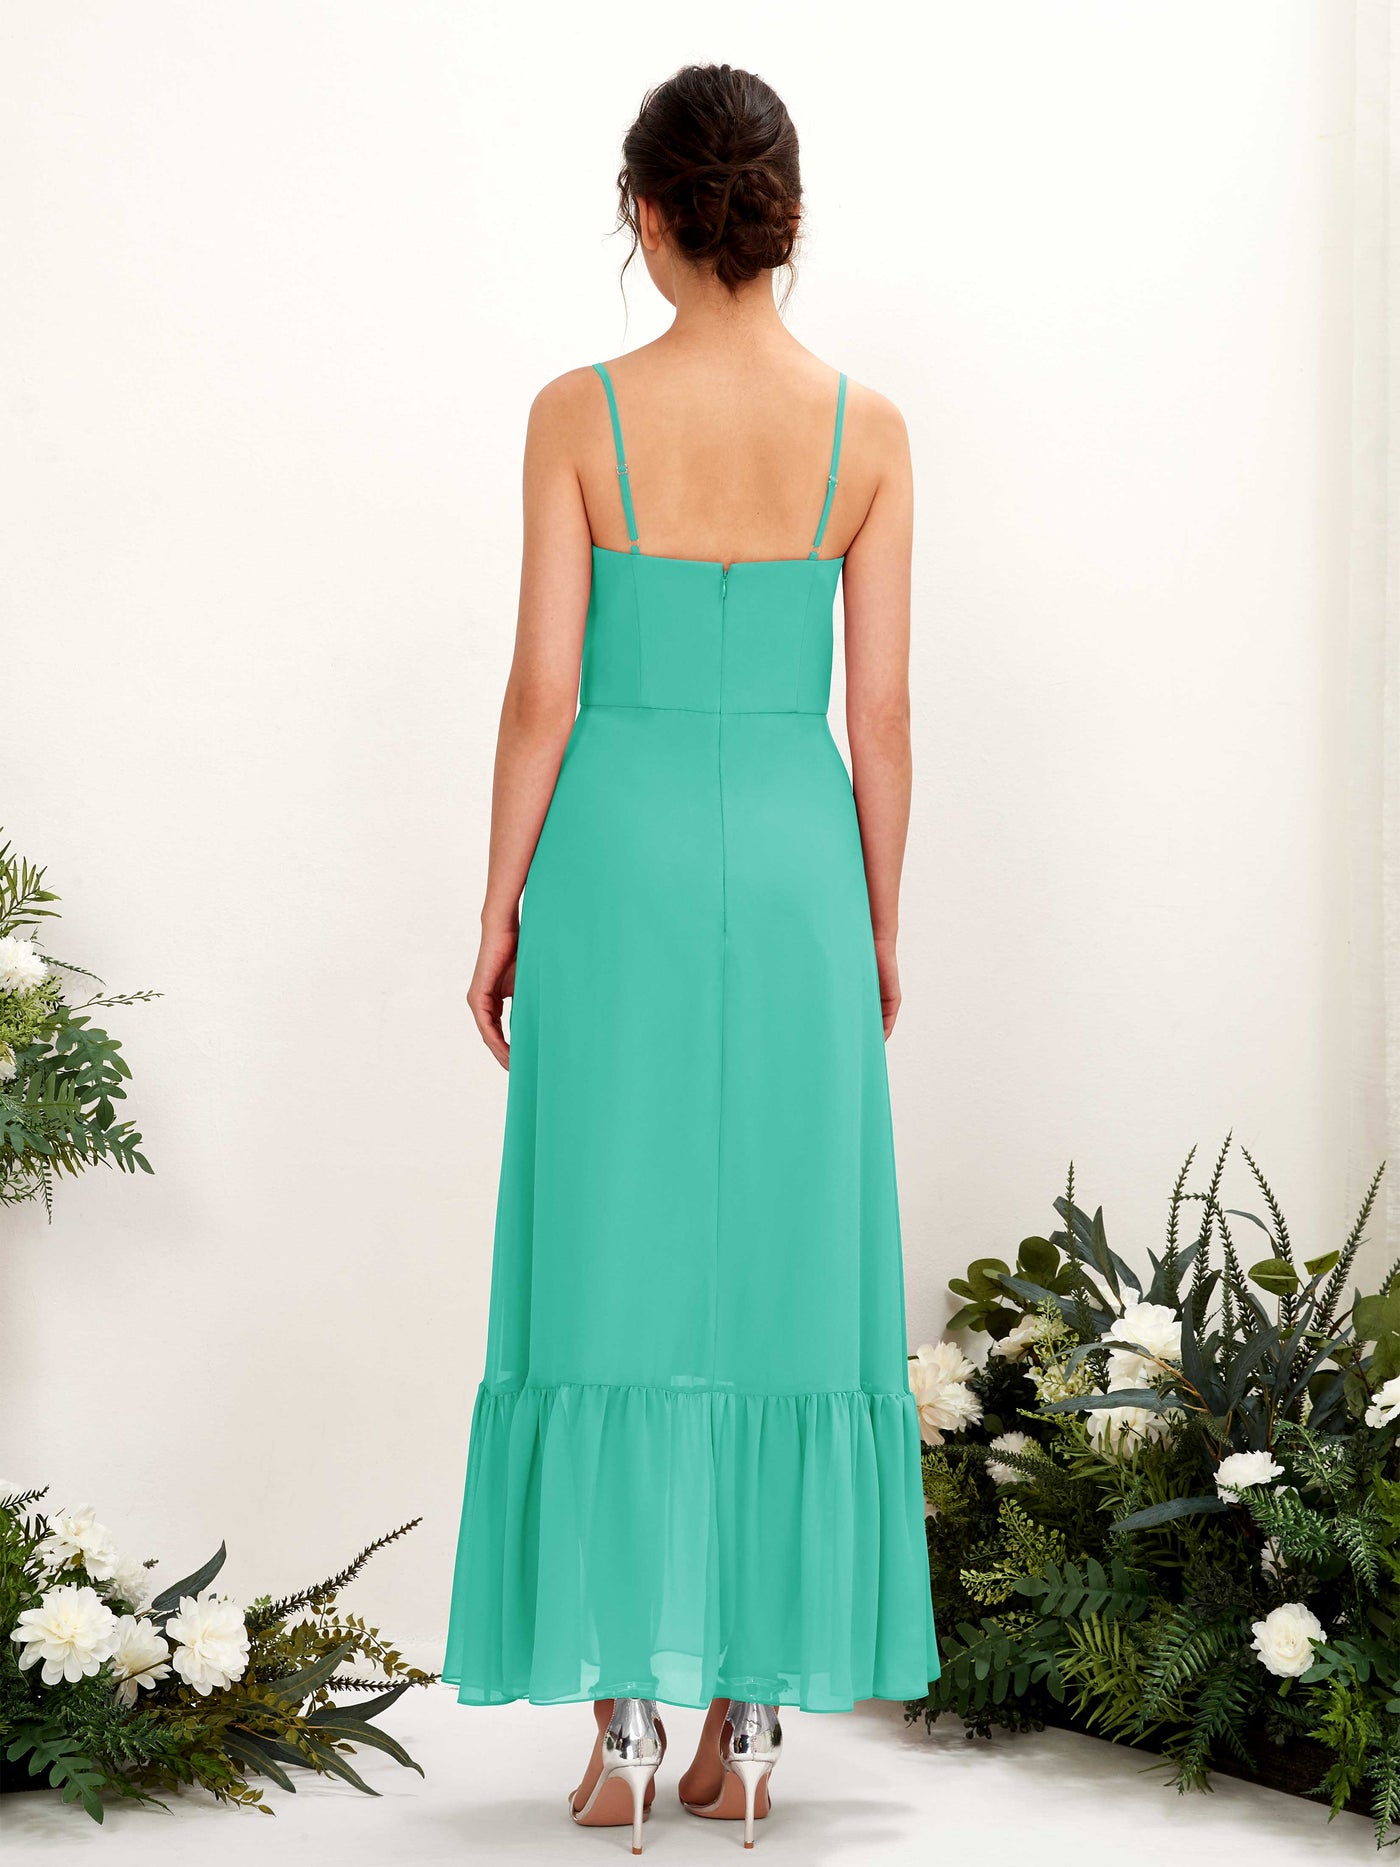 Spaghetti-straps Sweetheart Sleeveless Chiffon Bridesmaid Dress - Tiffany (81223032)#color_tiffany